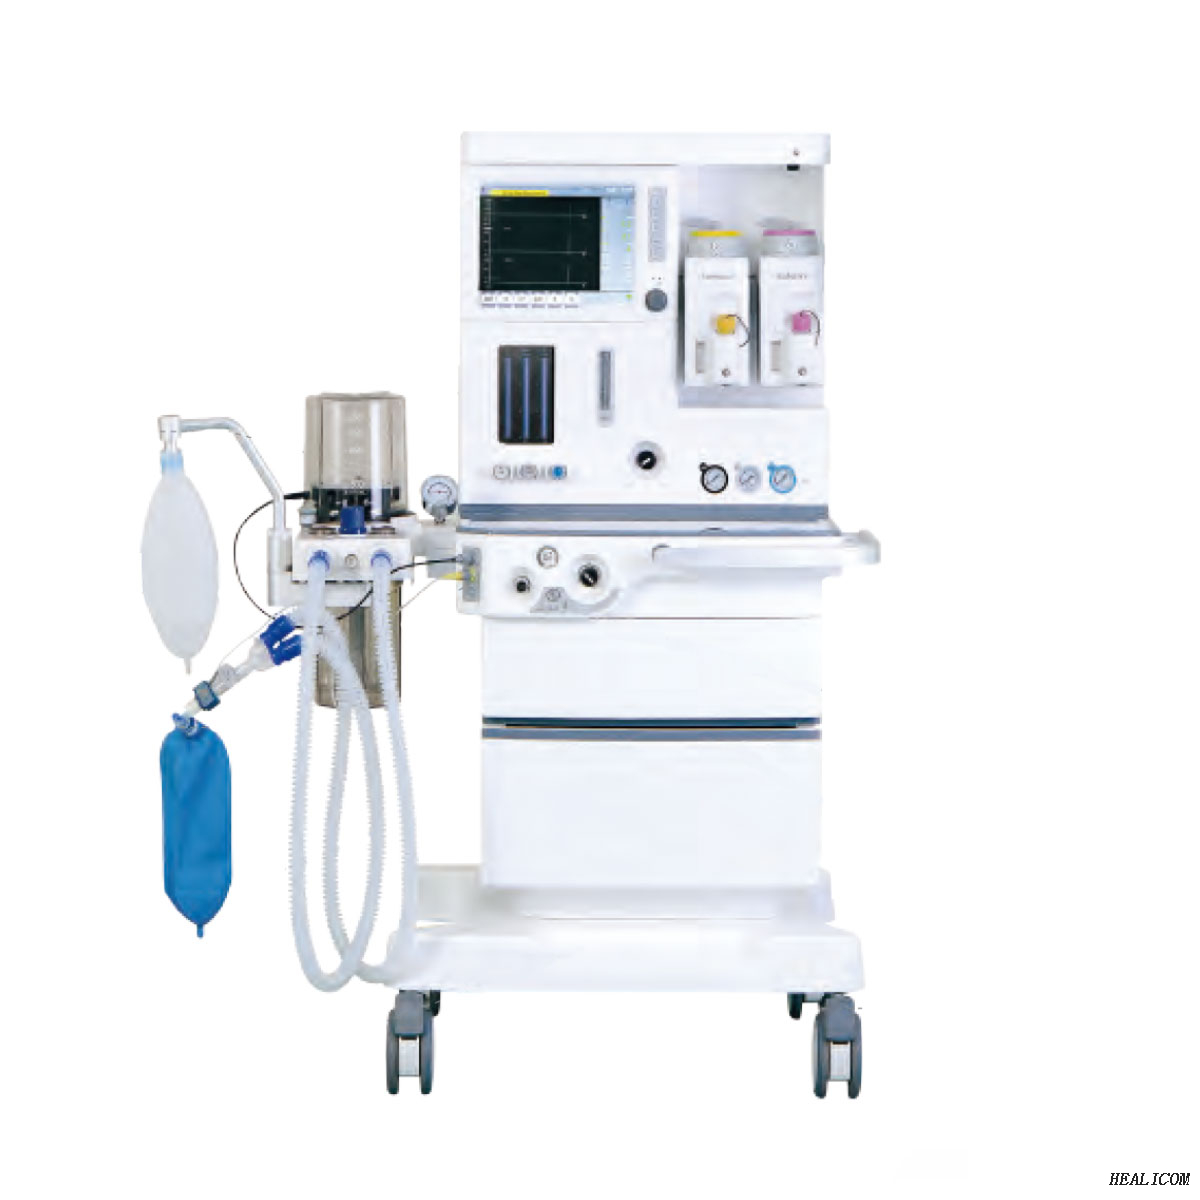 Vendita calda Healicom HA-6100 Plus Apparecchiatura per anestesia per pazienti con sistemi di macchine per anestesia